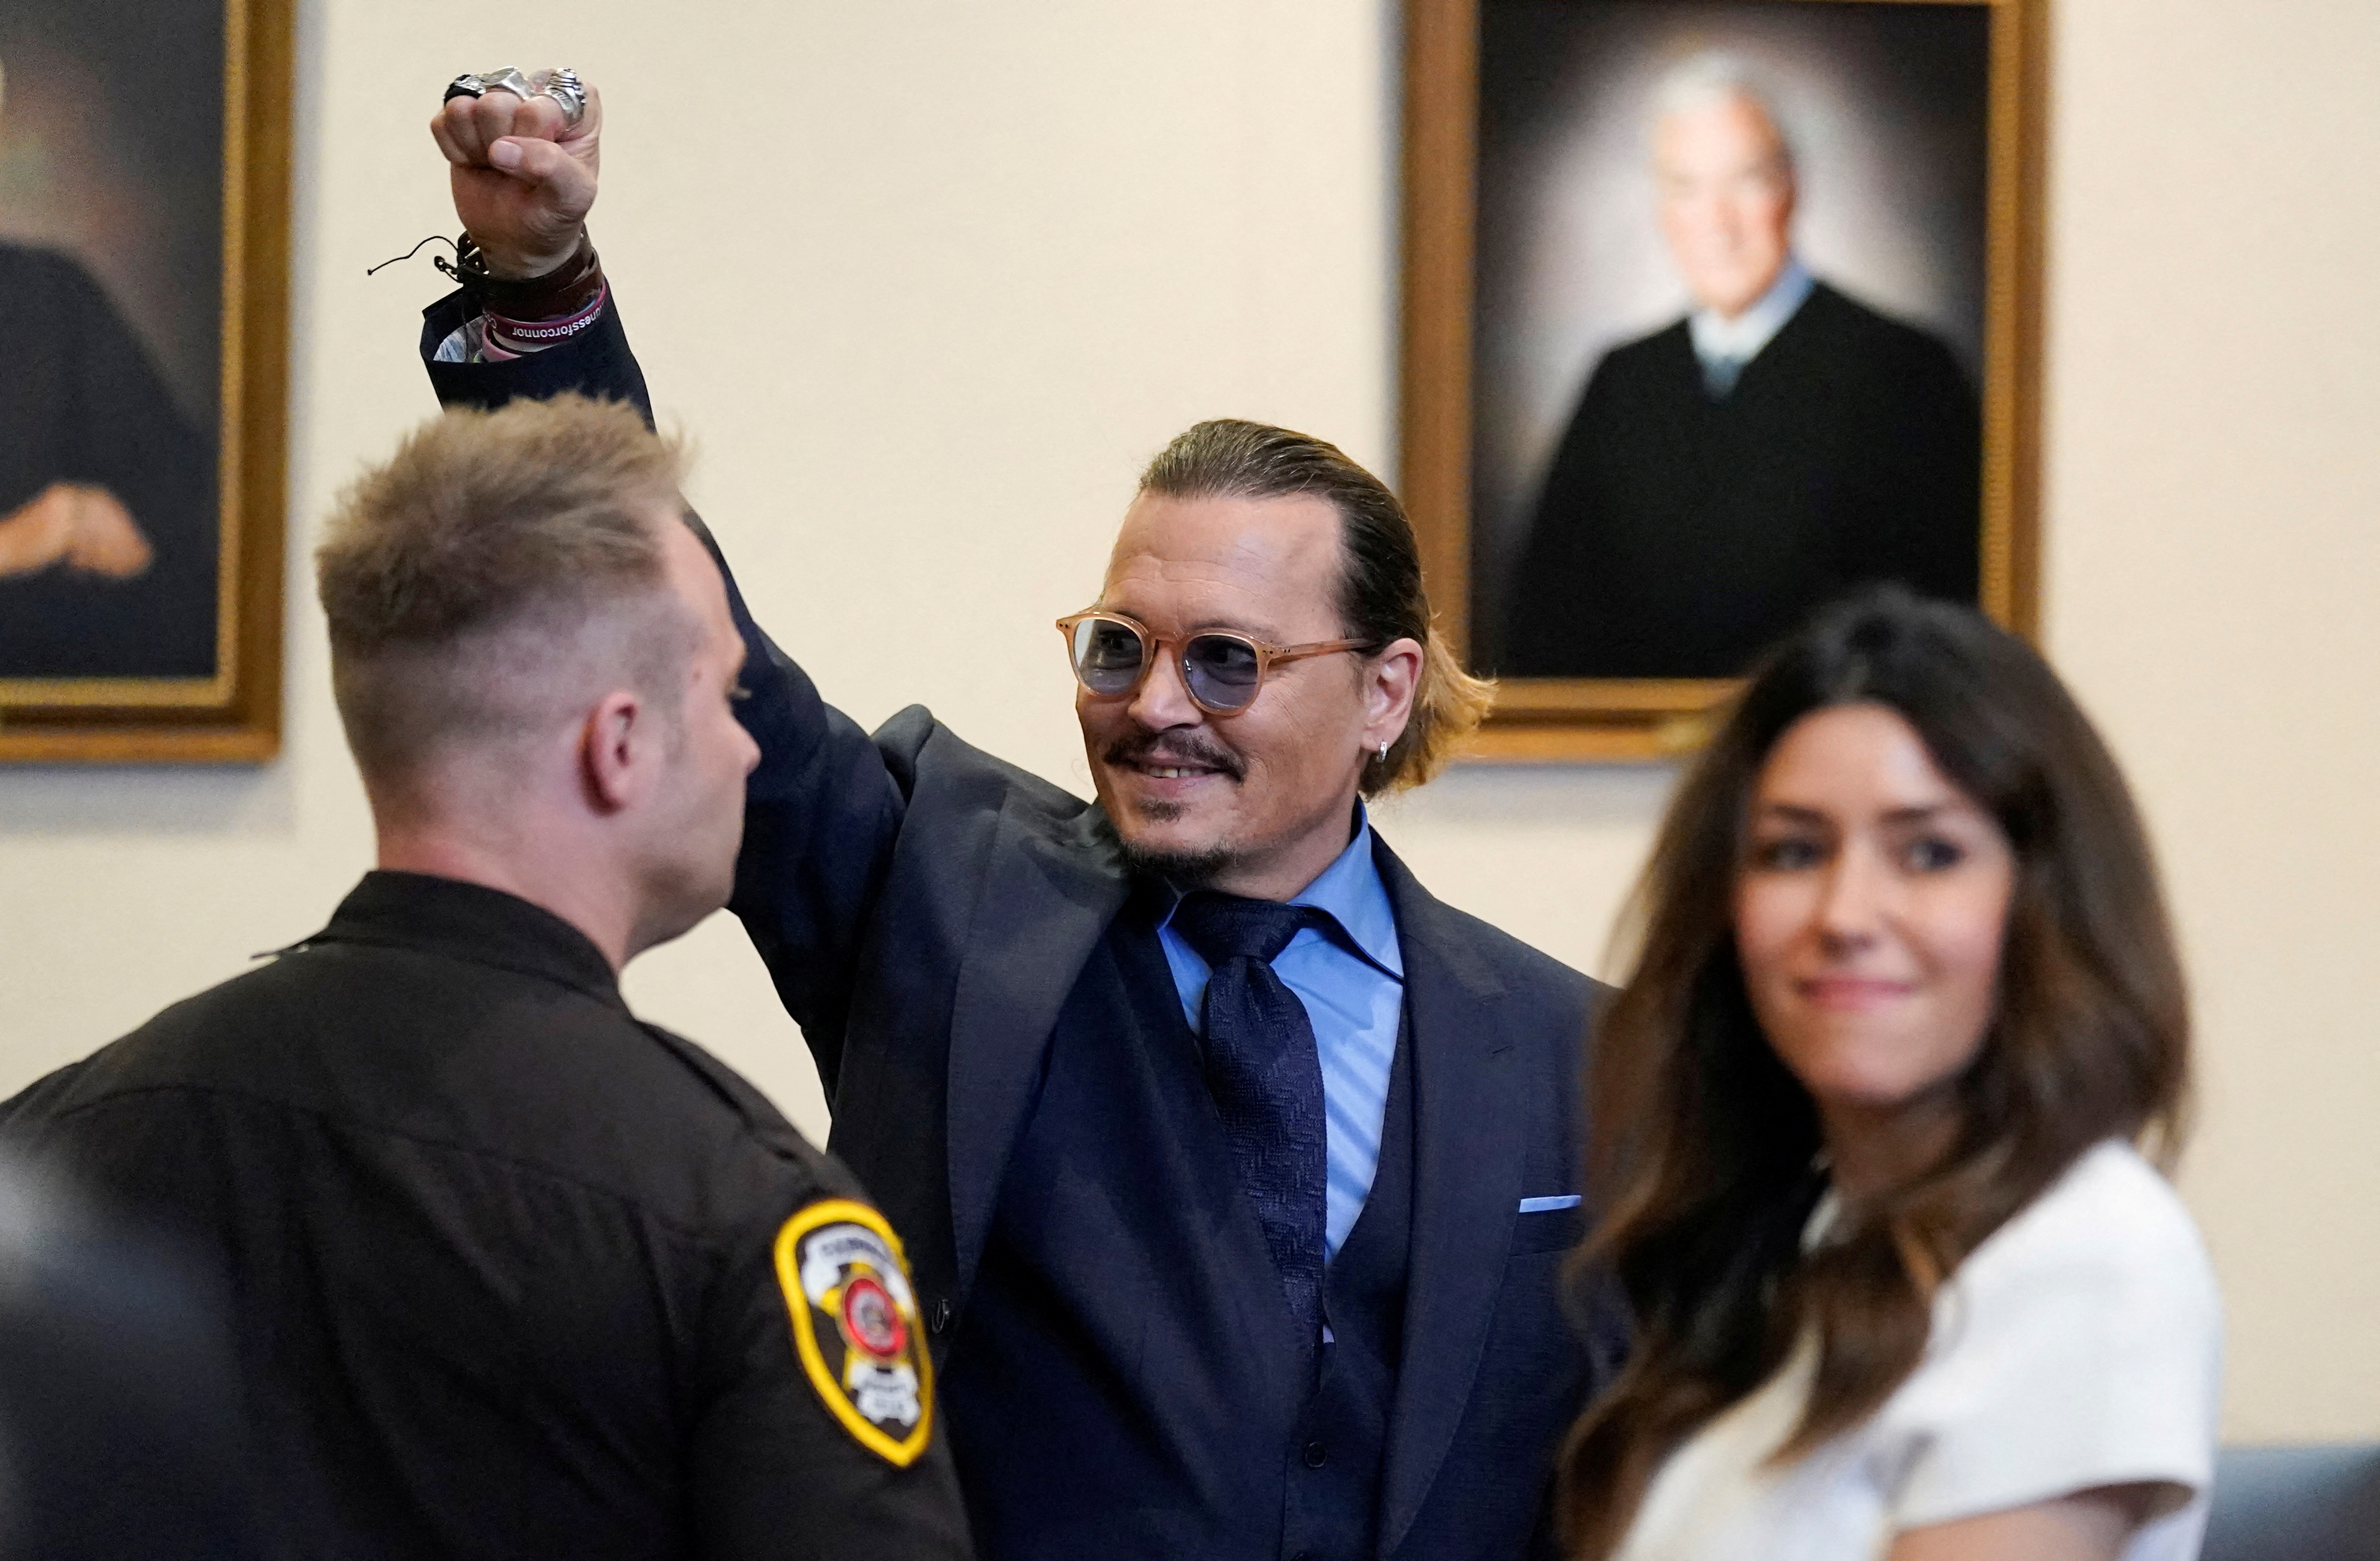 El actor Johnny Depp en la corte después de los argumentos finales durante su caso de difamación contra la ex esposa Amber Heard, en la sala del tribunal del circuito del condado de Fairfax, Virginia, 27 de mayo de 2022 (Reuters)